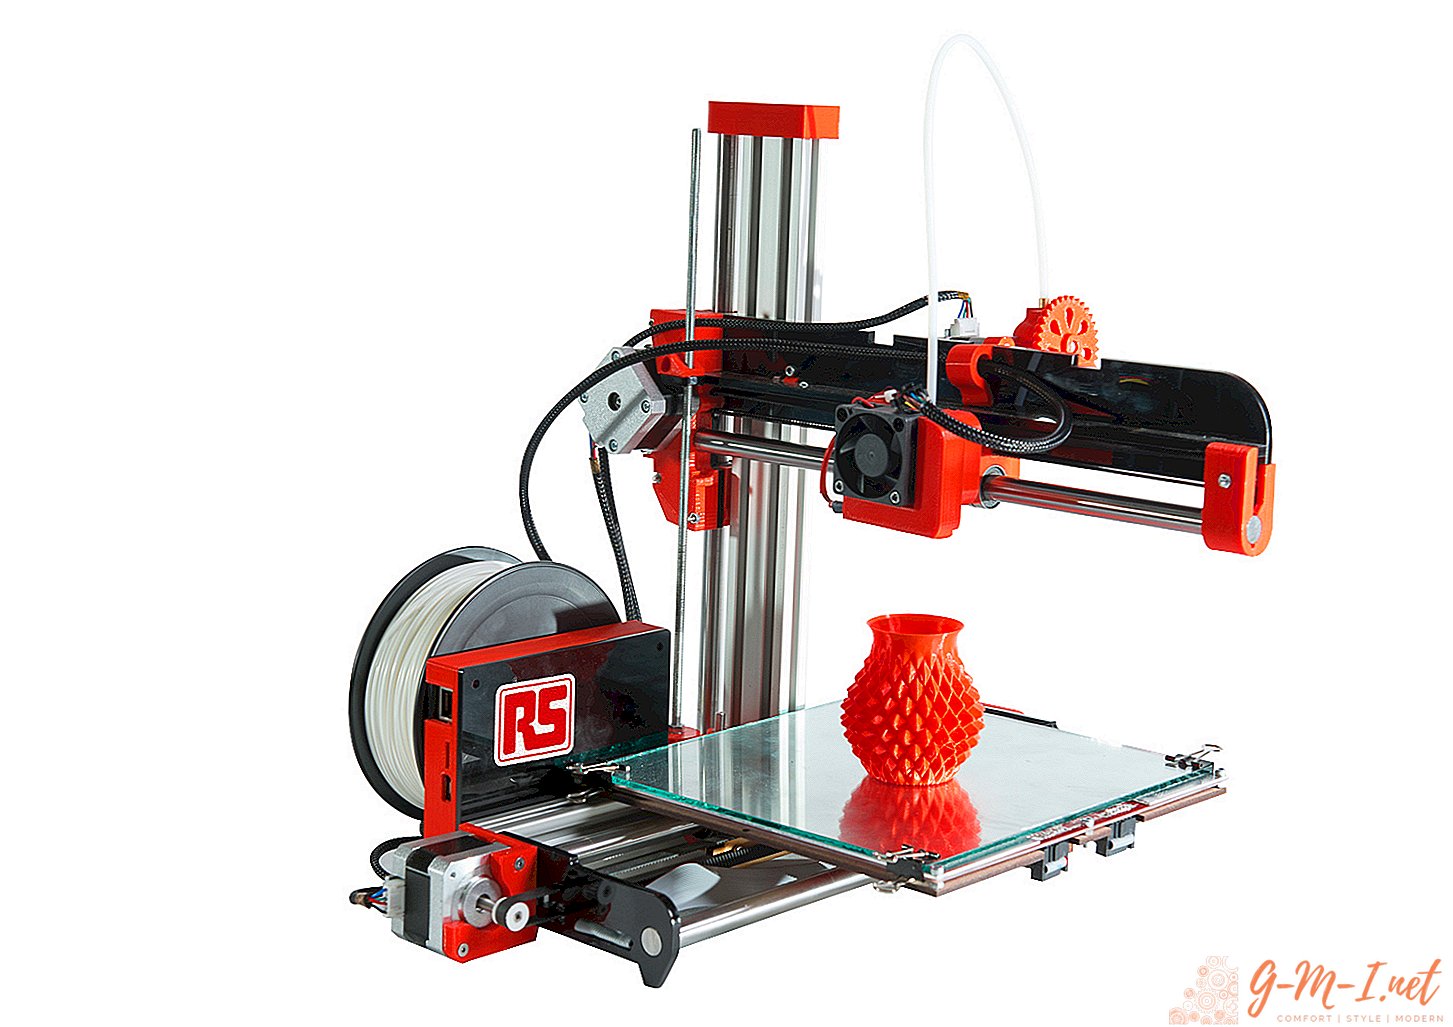 Comment fonctionne une imprimante 3D